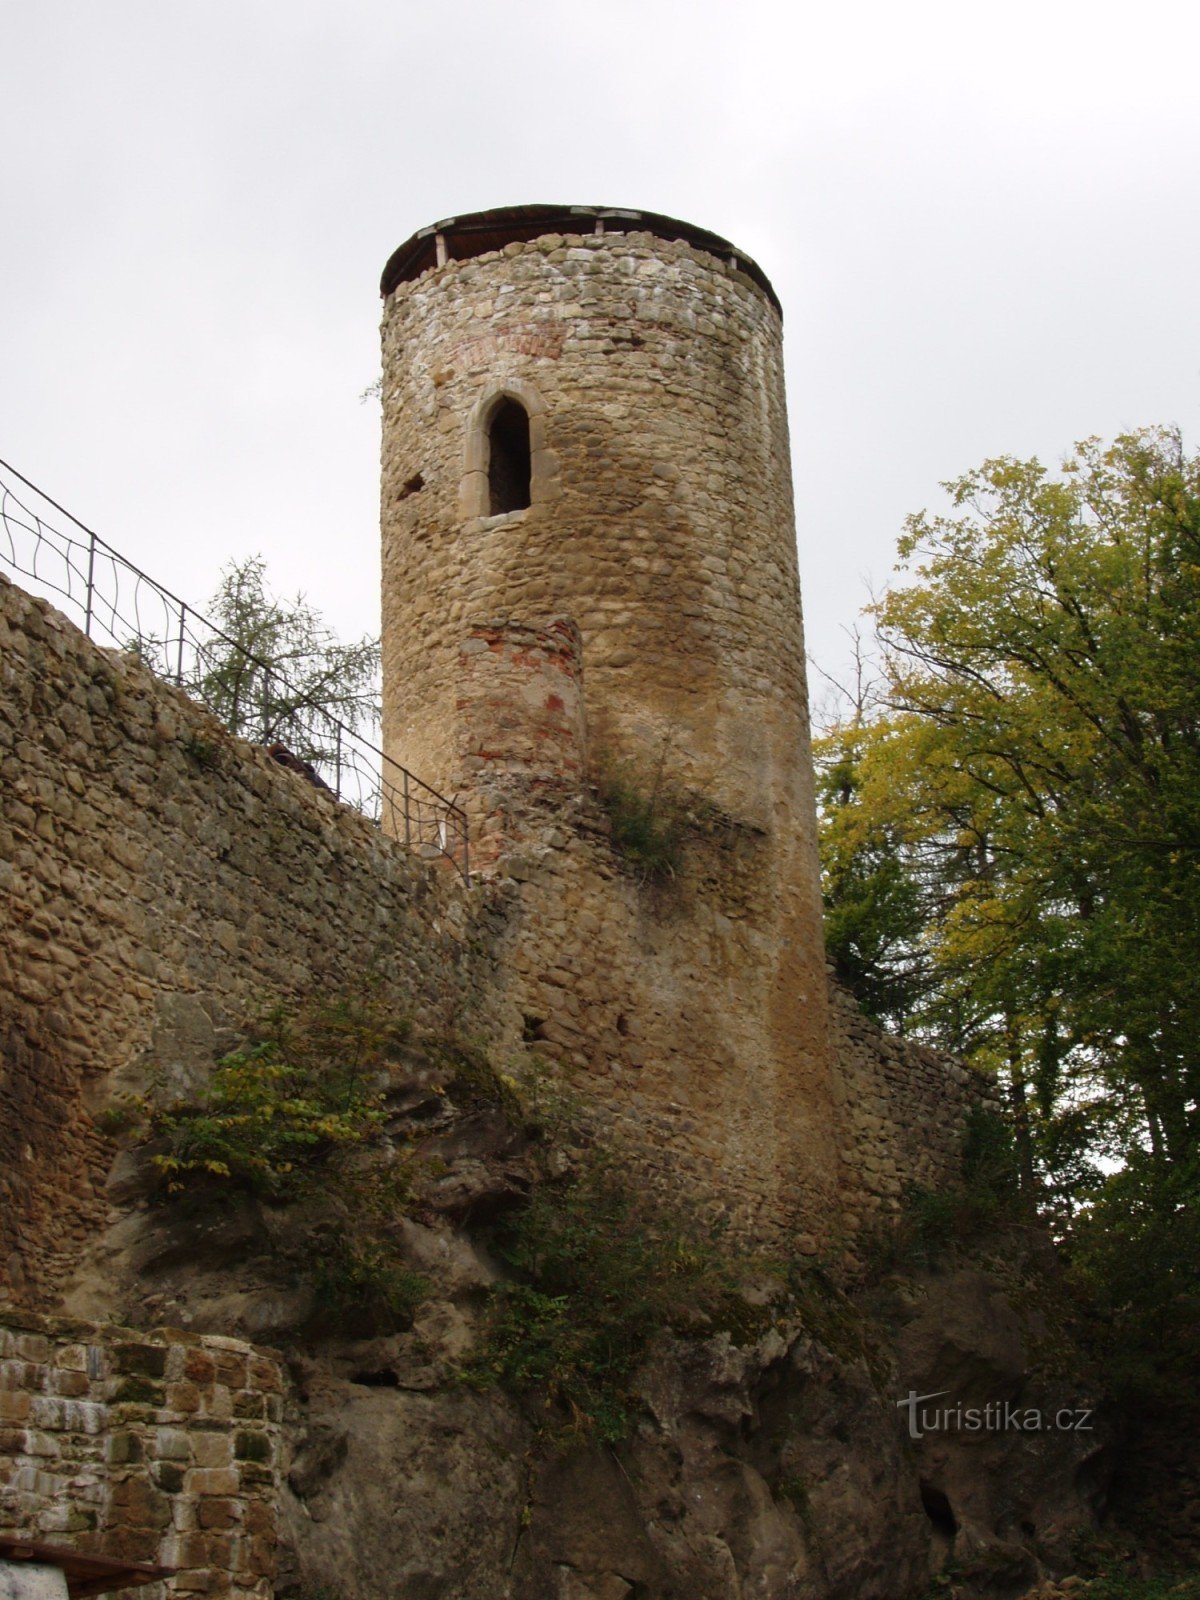 La torre cilindrica occidentale del castello di Cimburk vicino a Koryčany